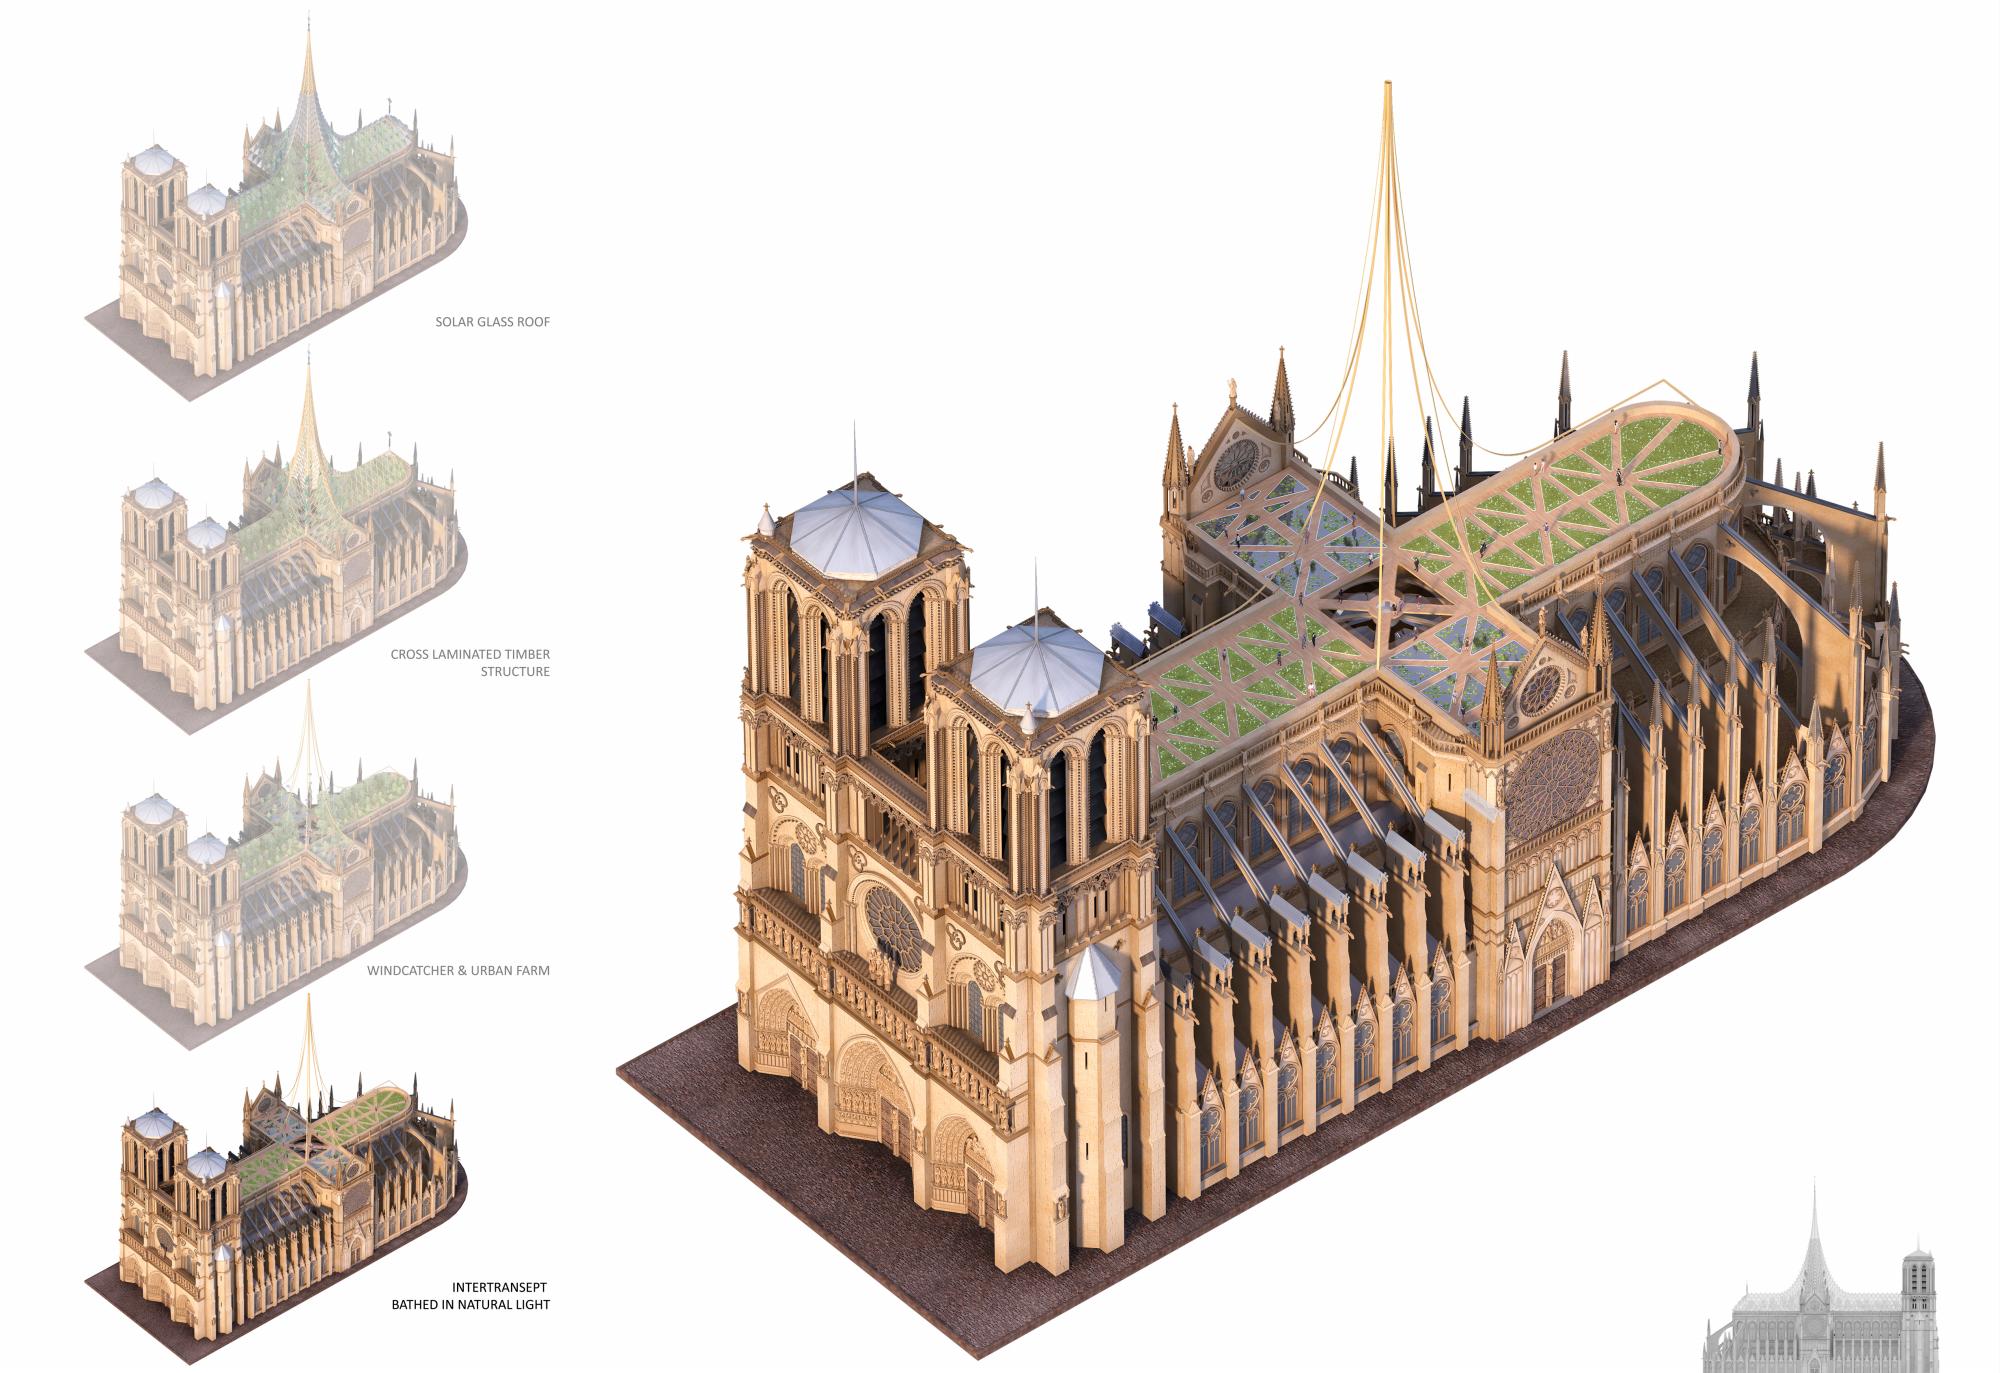 Representación gráfica de lo que quiere hacer el estudio de arquitectura en Notre Dame.